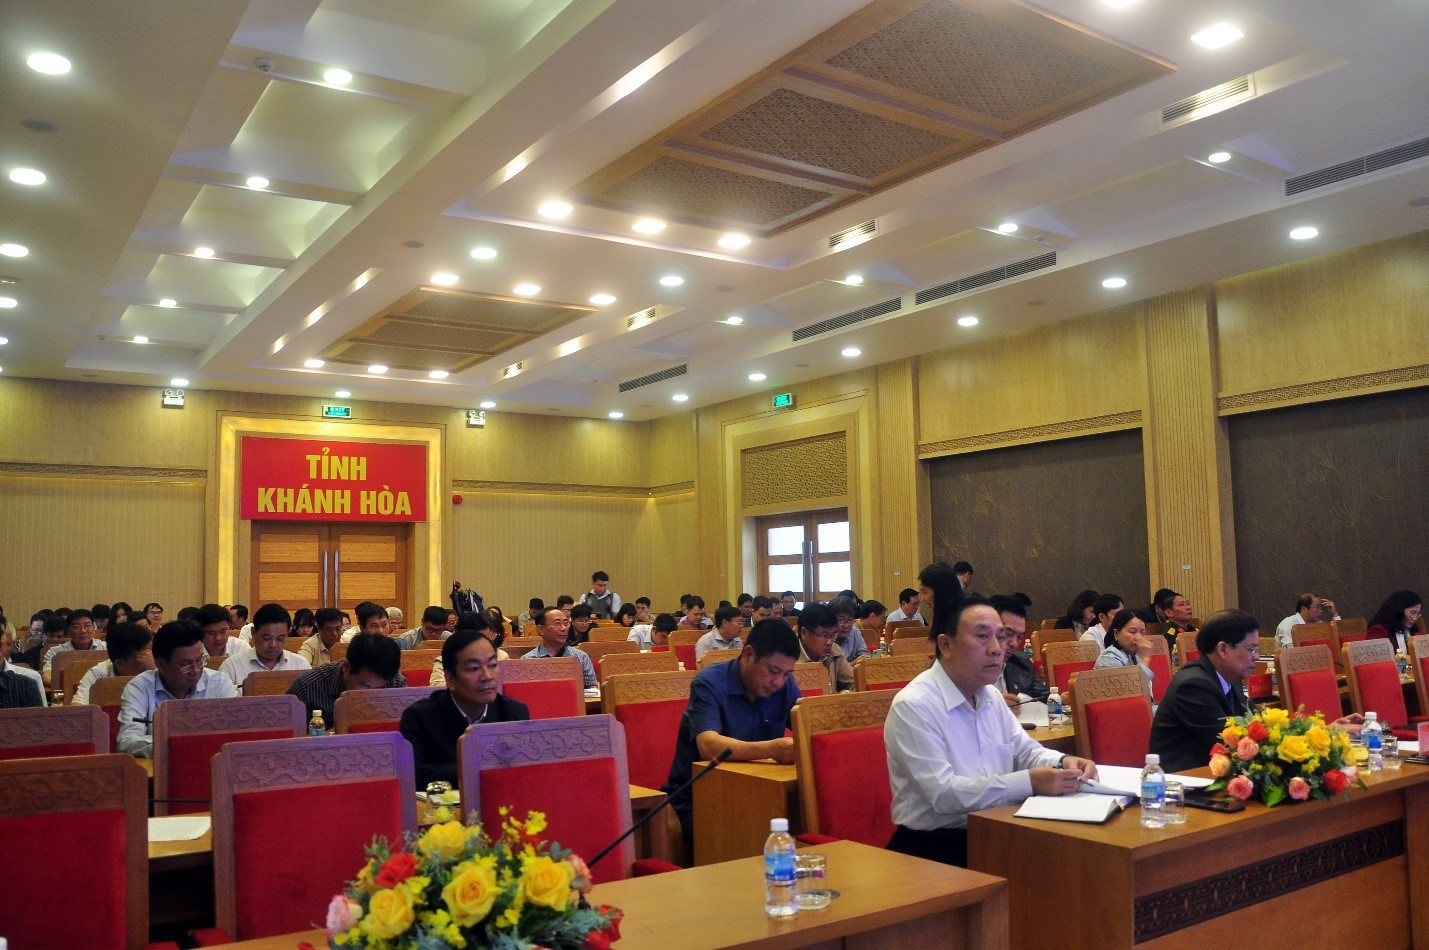 Toàn cảnh Họp báo tình hình kinh tế - xã hội năm 2022 tỉnh Khánh Hòa